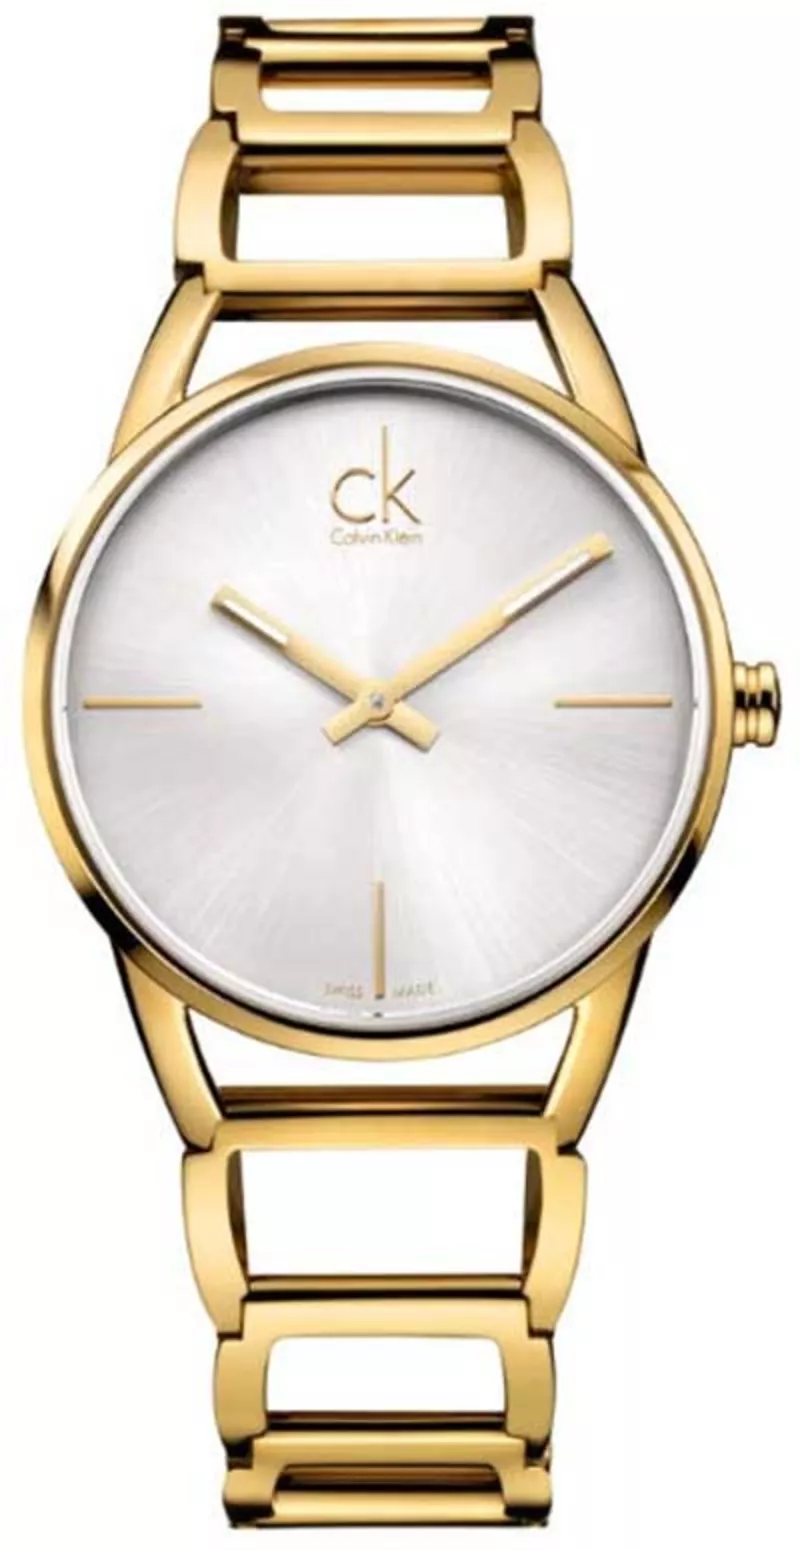 Часы Calvin Klein K3G23526